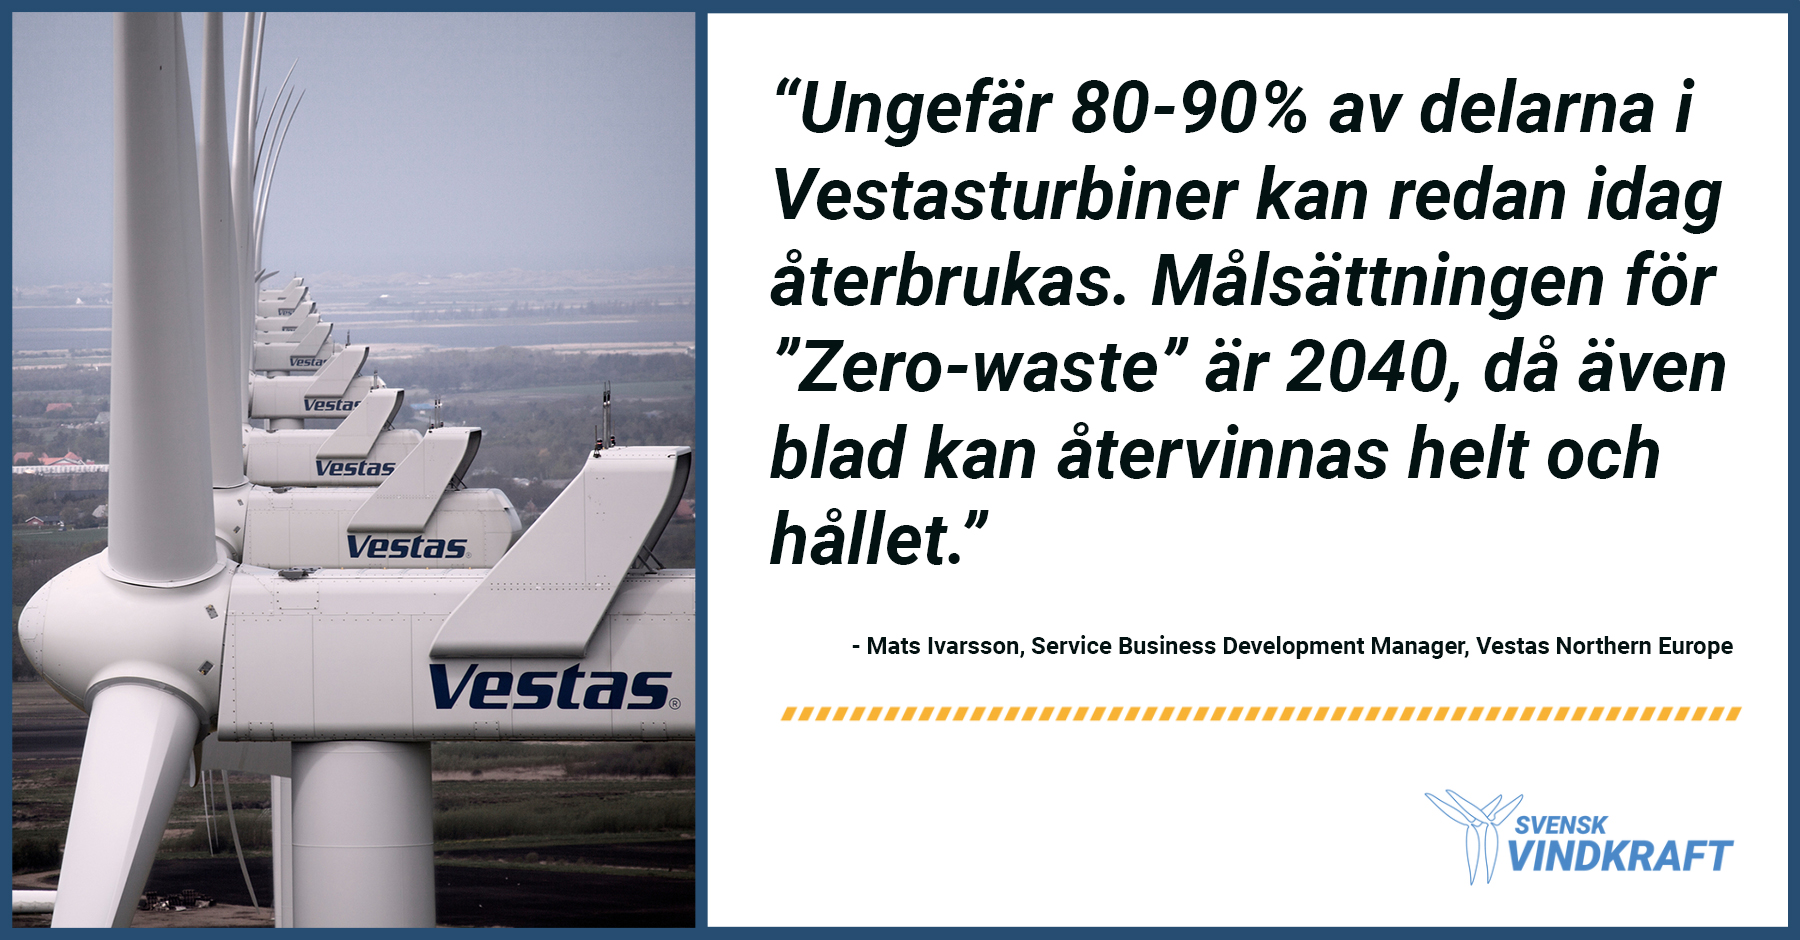 Vi välkomnar Vestas som ny medlem i Svensk Vindkraft!